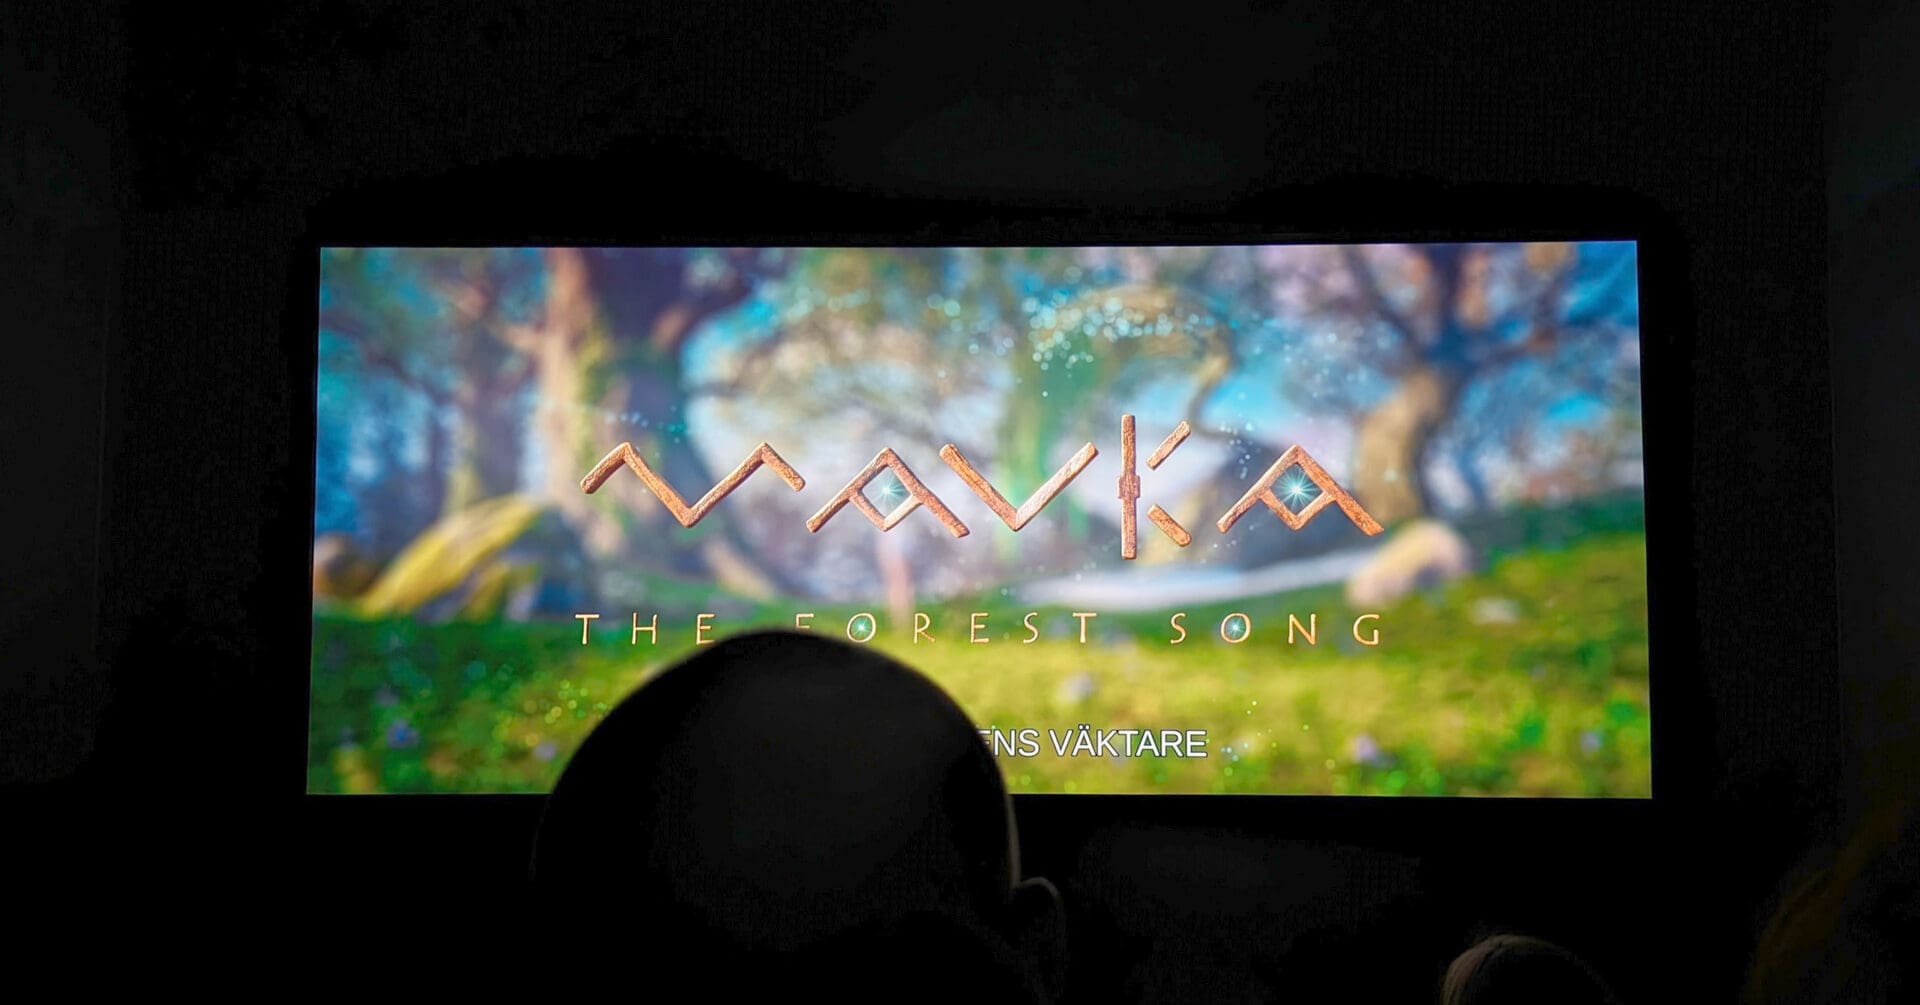 мультфильм на экране в кинозале, буквы «MAVKA»